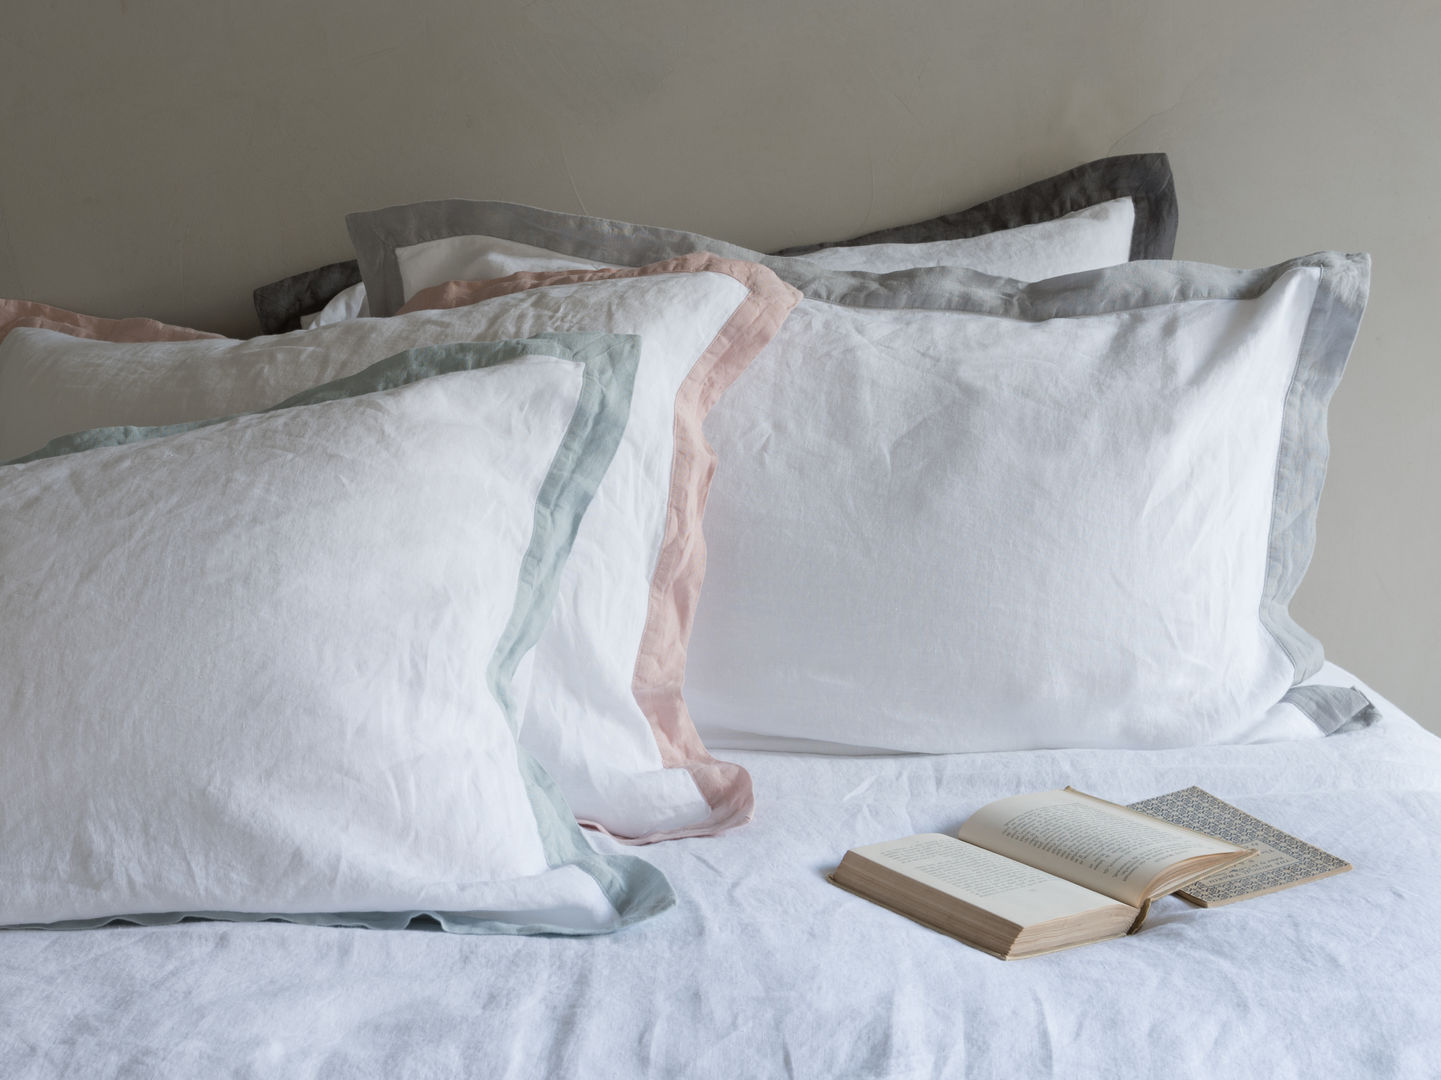 Lazy Daze bed linen Loaf Modern style bedroom bedding,bedlinen,linen,trimming,grey,pink,charcoal,blue